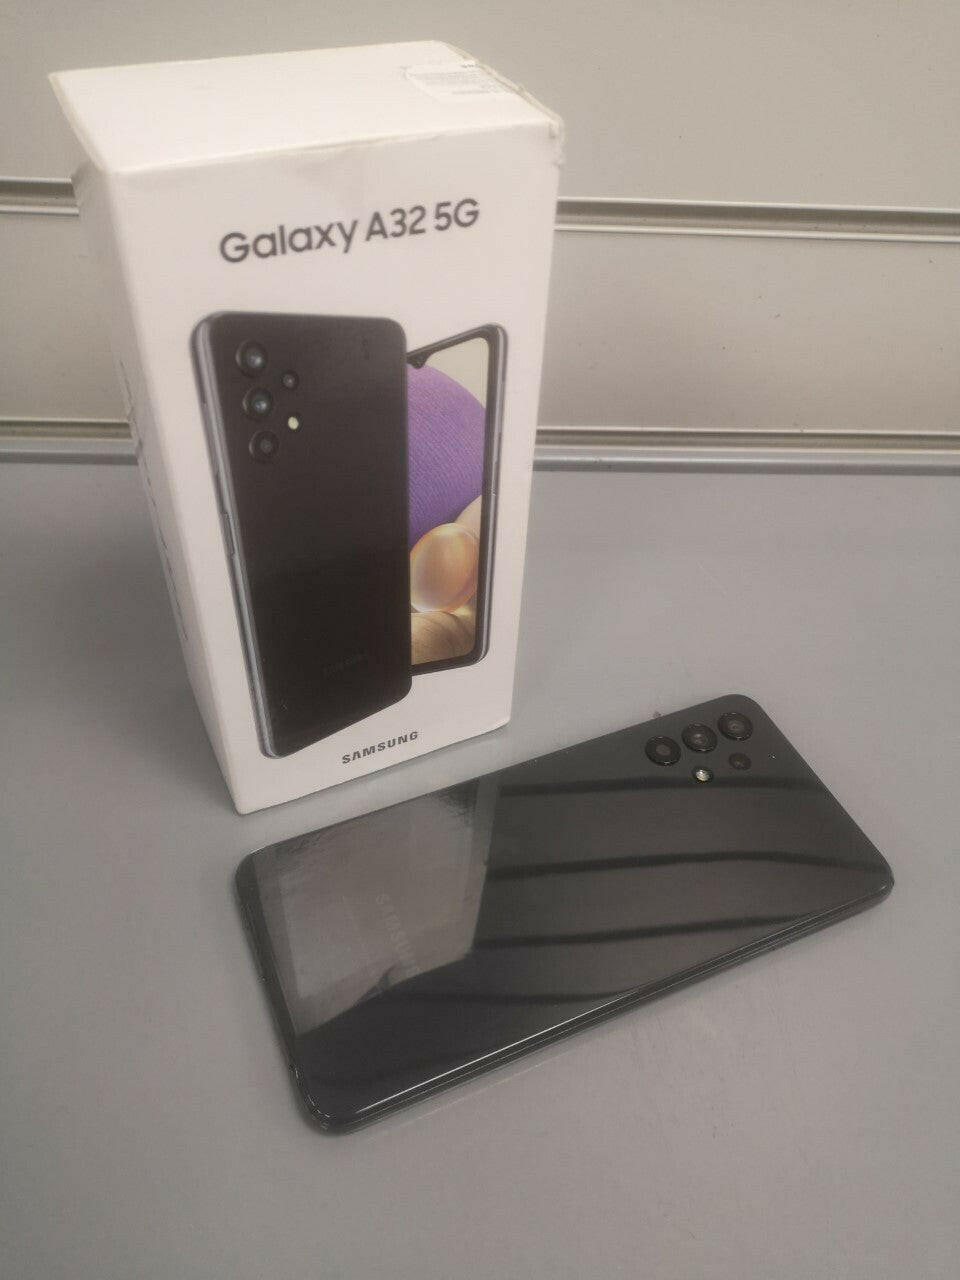 Samsung Galaxy A32 5G - 64 GB, Awesome Black Dual Sim